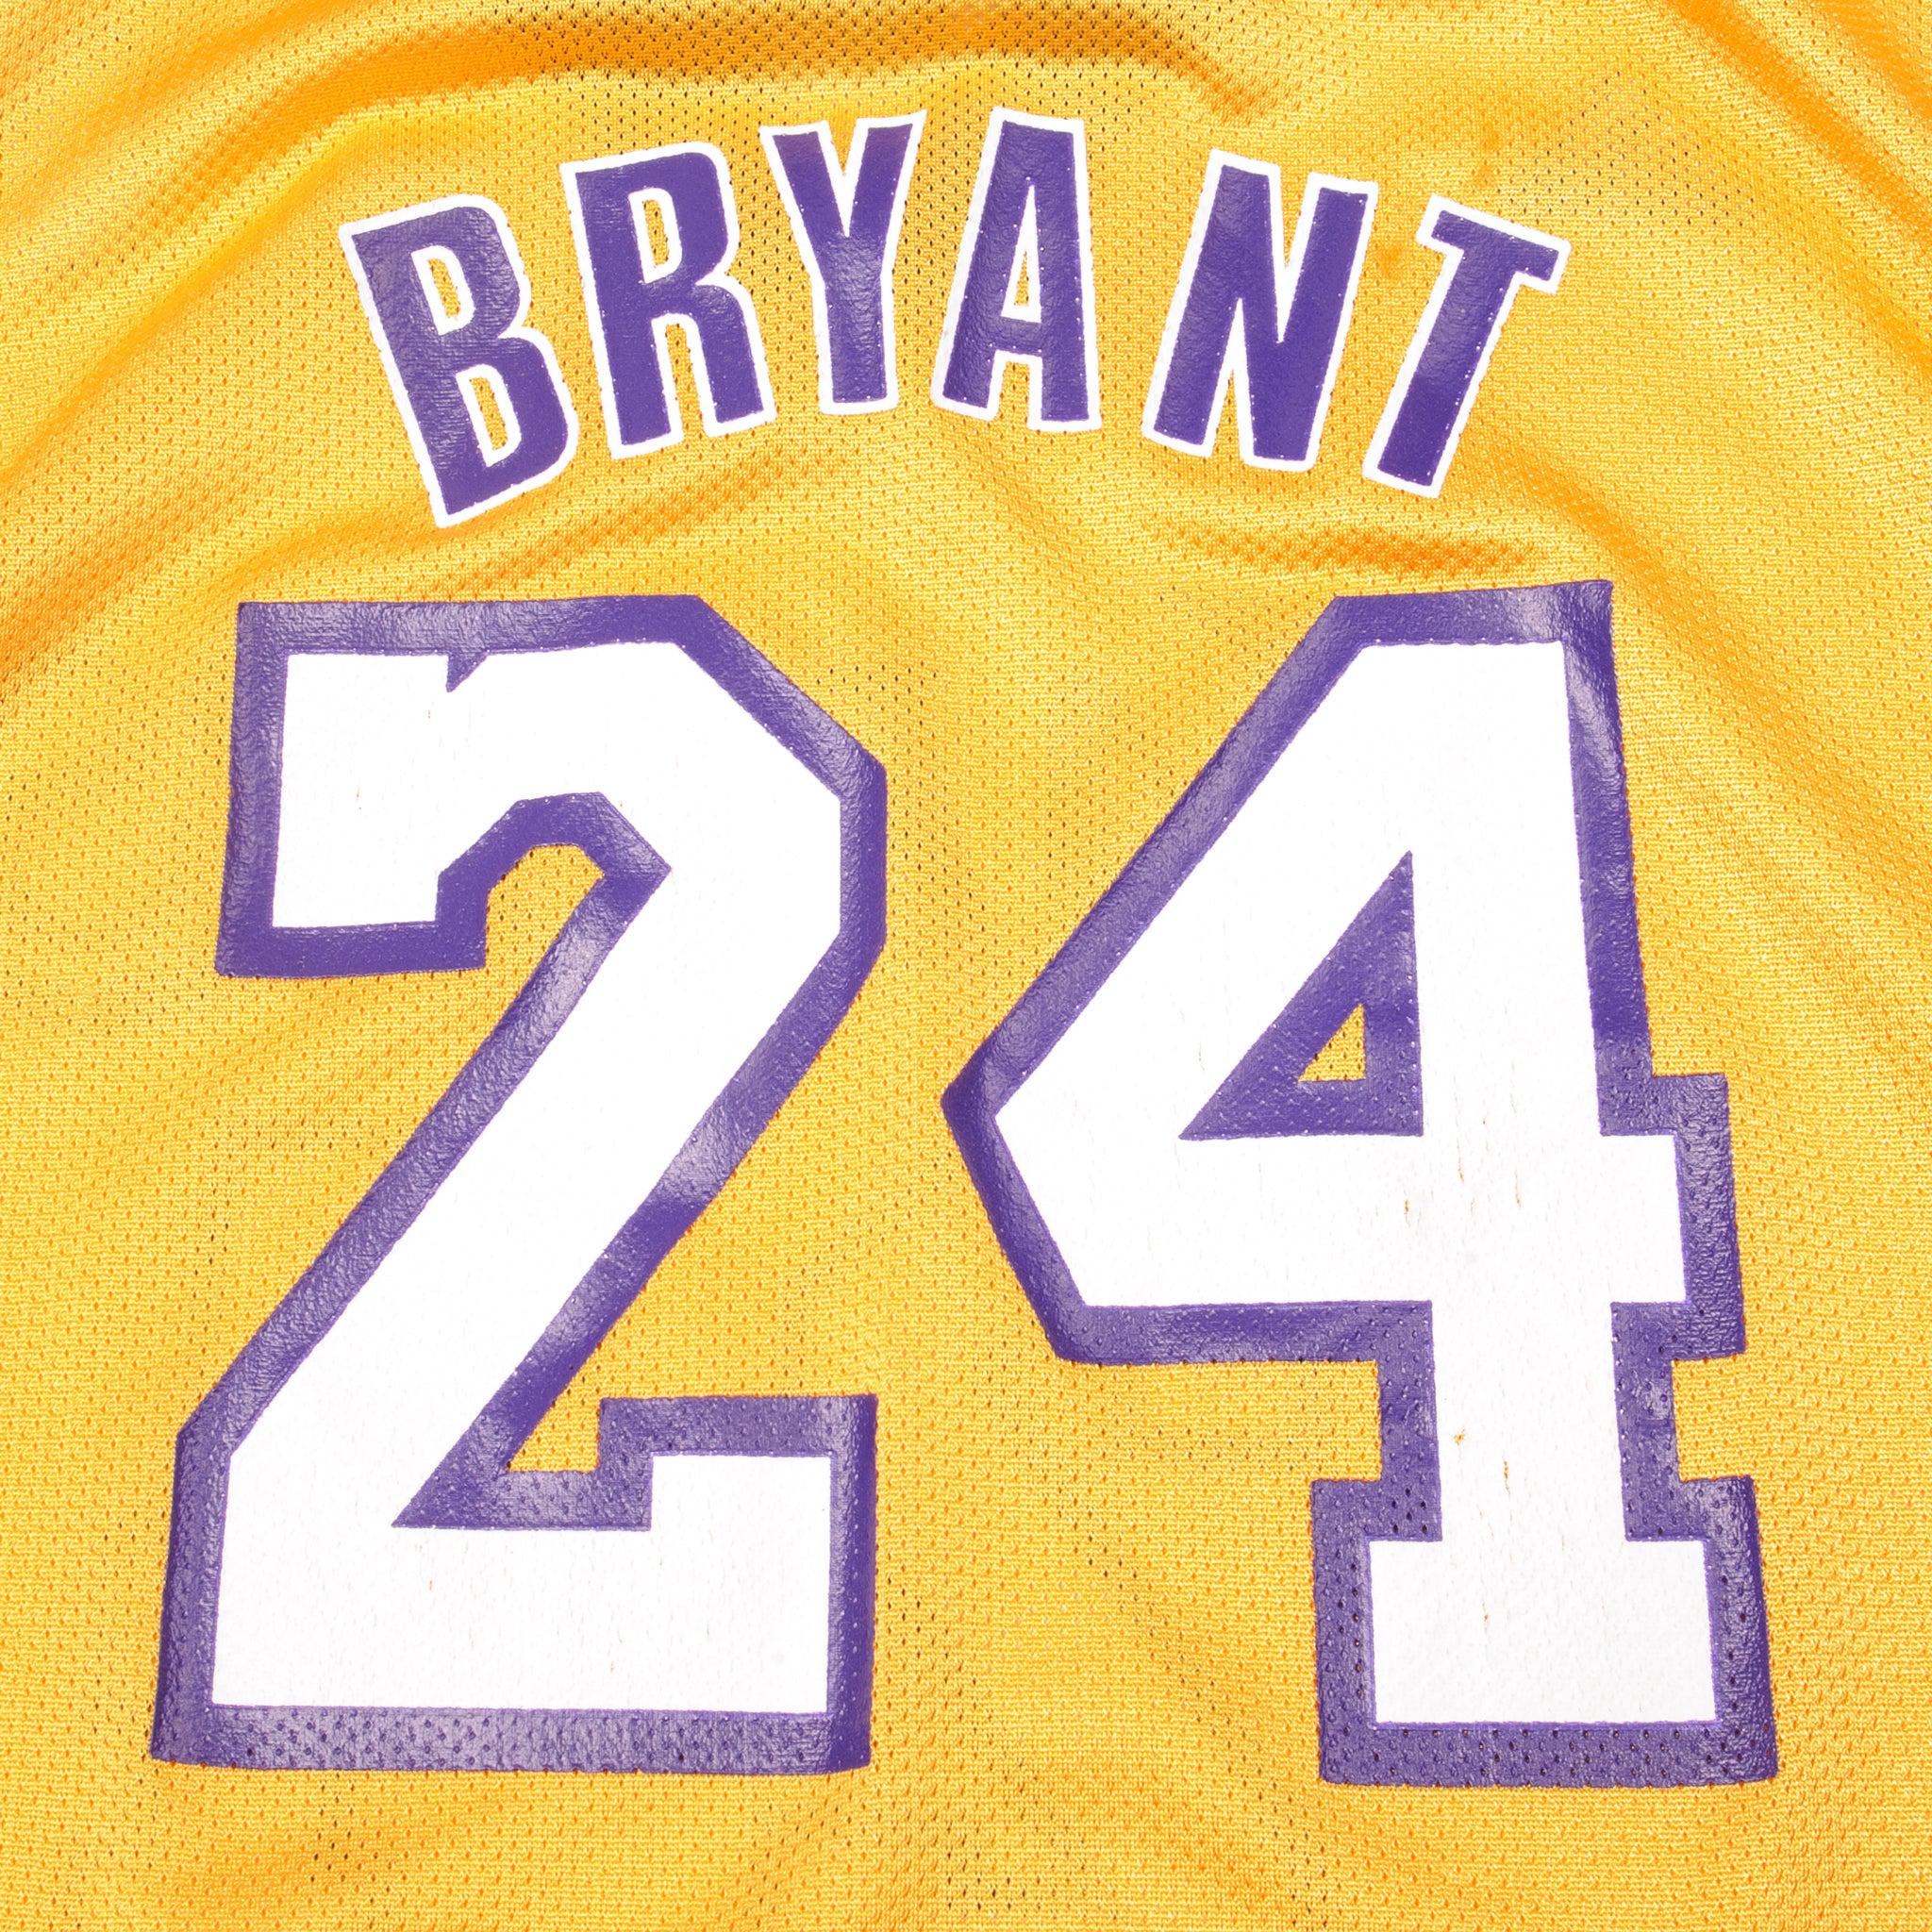 adidas, Shirts, Lakers Kobe Bryant Jersey 24 Size Small